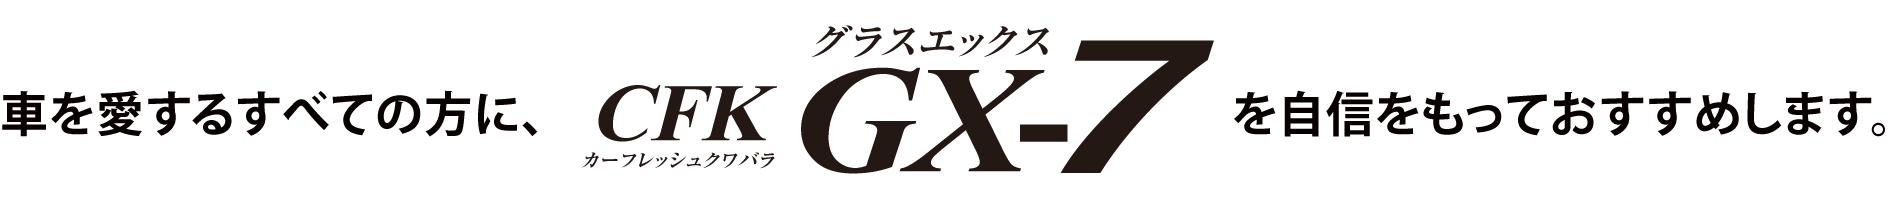 GX-7 GX7 OXX  R[g R[eBO R[g Ԃ邷ׂĂ̕ɁAGX-7MĂ߂܂B